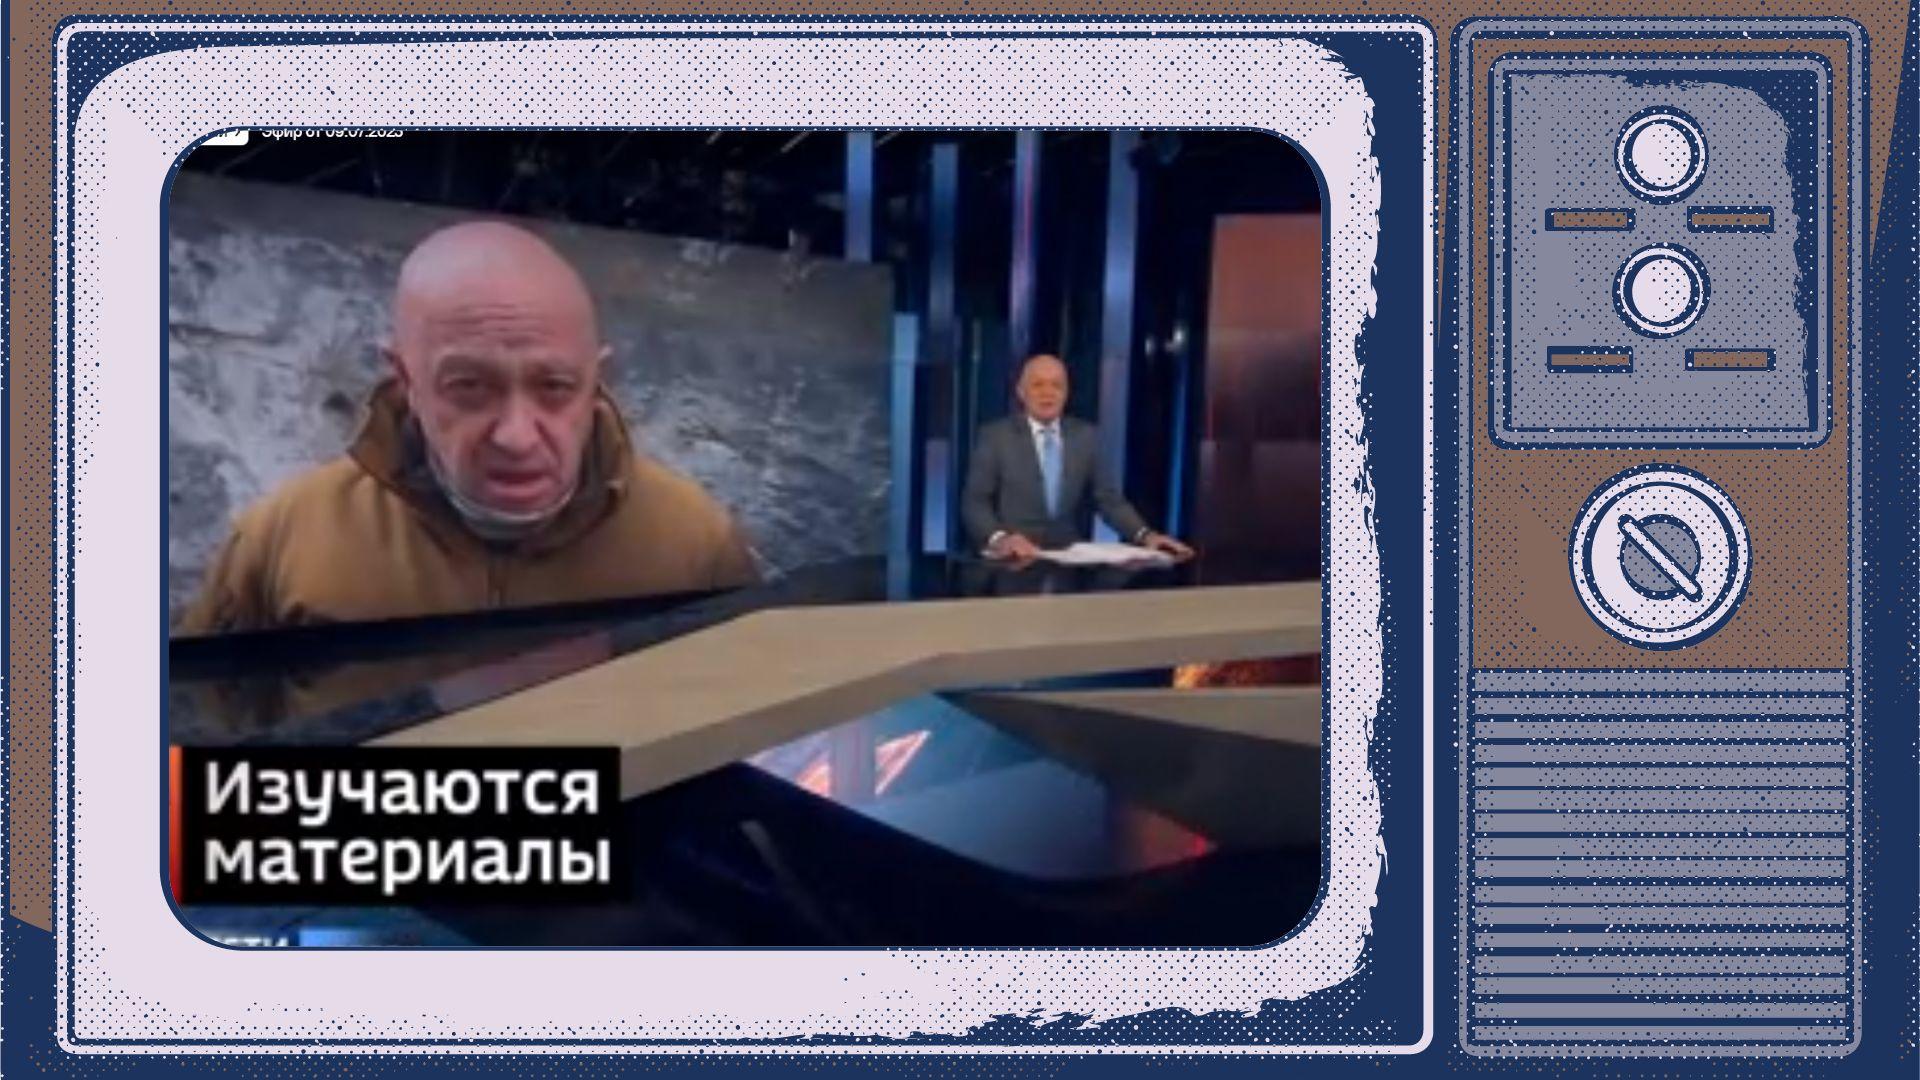 Grafika: w ramce starego telewizora kadr ze studoa telewizyjnego: wielkie zdjęcie Prigożyna i prezenter (Kisielow)